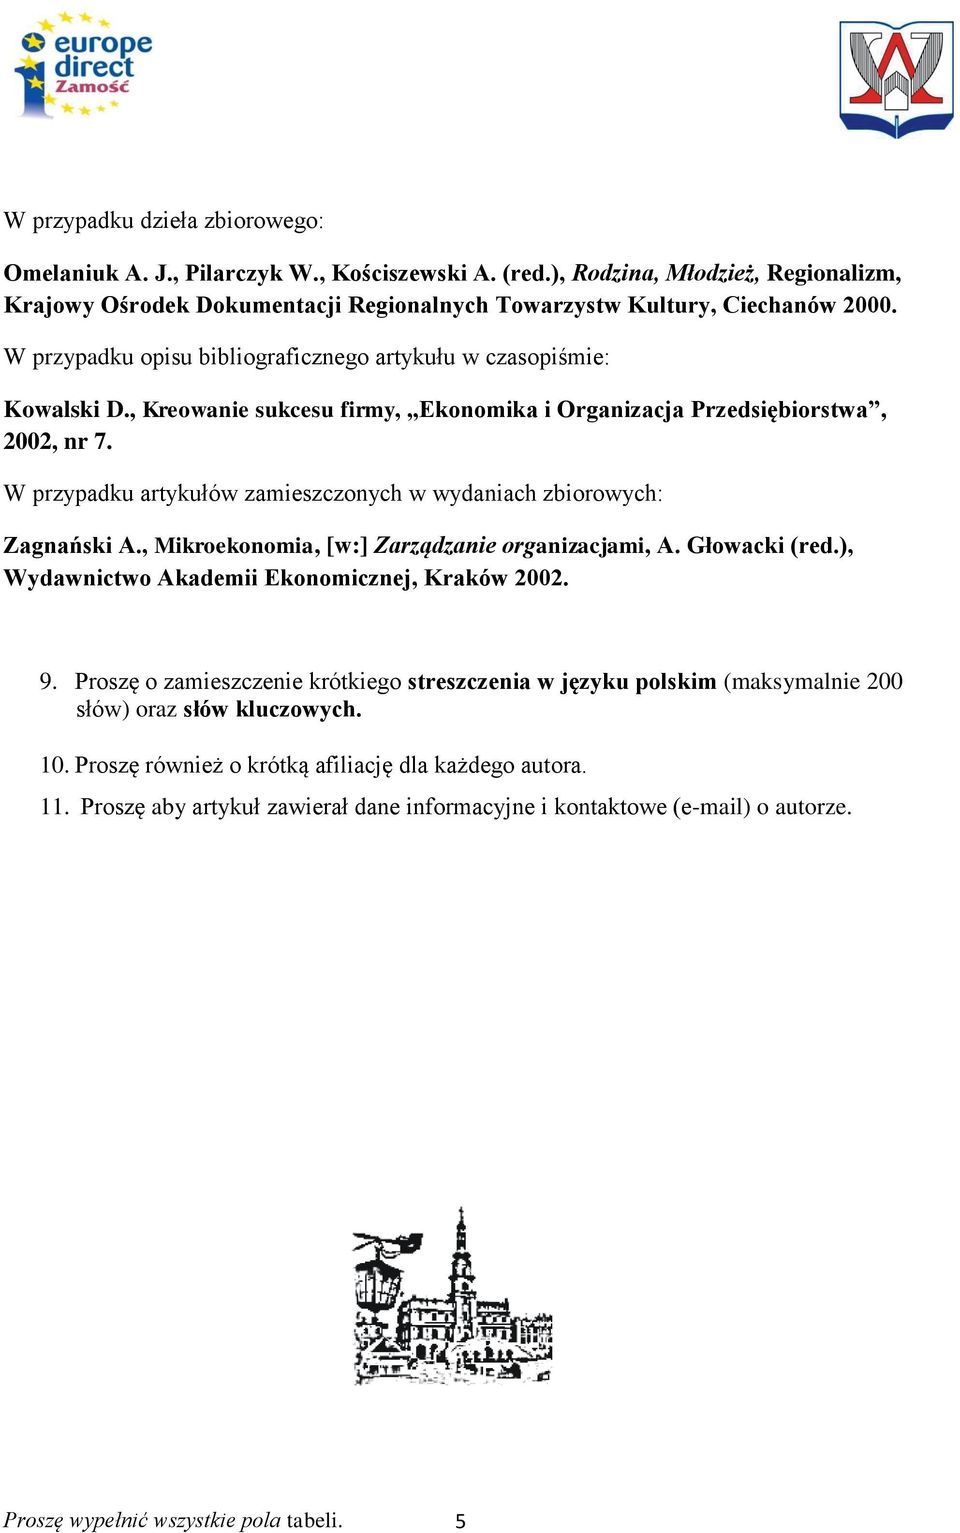 W przypadku artykułów zamieszczonych w wydaniach zbiorowych: Zagnański A., Mikroekonomia, [w:] Zarządzanie organizacjami, A. Głowacki (red.), Wydawnictwo Akademii Ekonomicznej, Kraków 2002. 9.